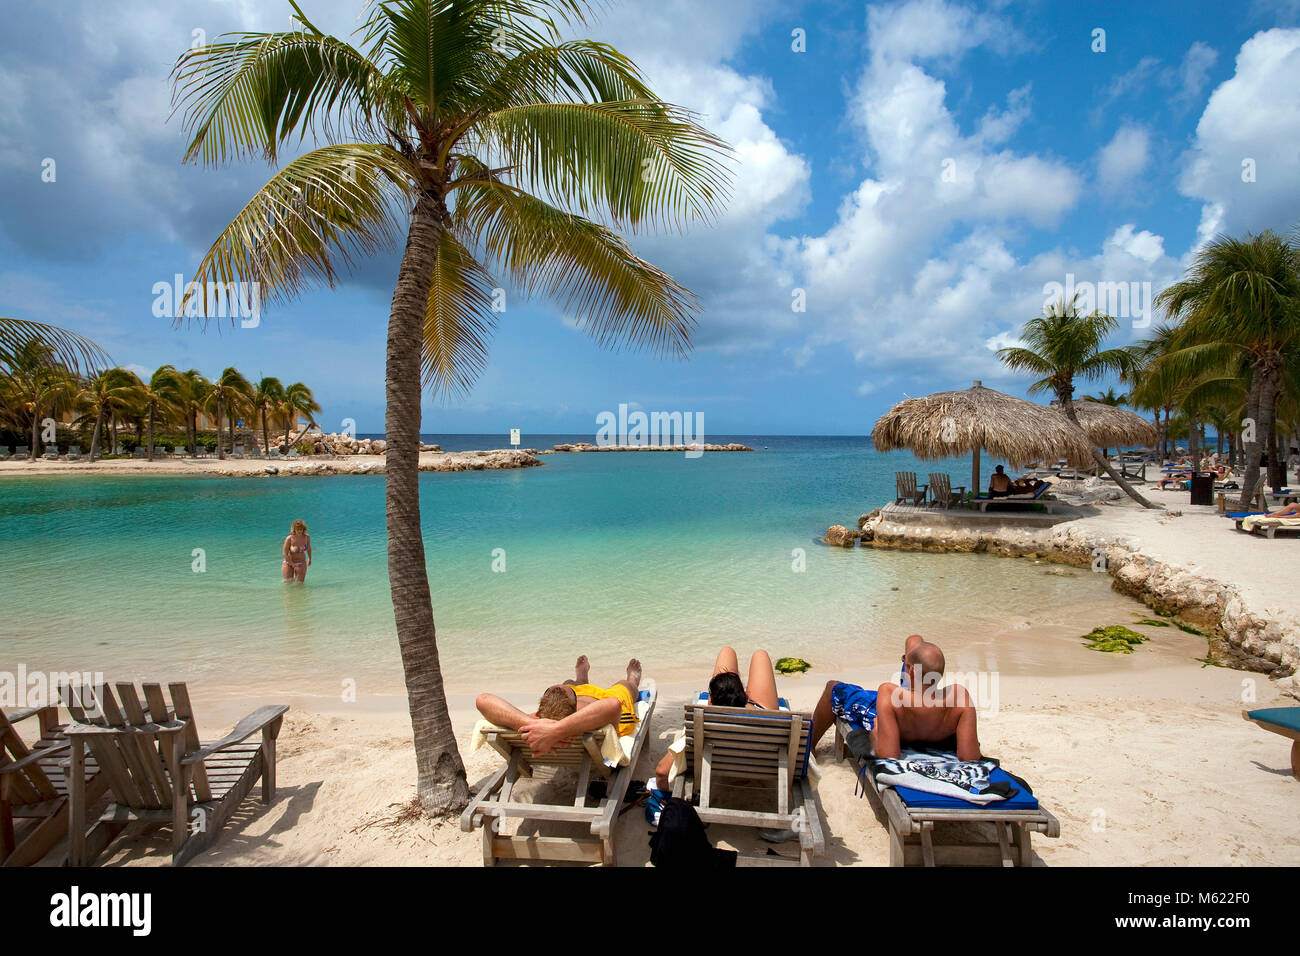 La gente de bañarse y tomar el sol en la playa idílica de Lions Dive Resort, Curazao, Antillas Neerlandesas, Caribe, Mar Caribe Foto de stock